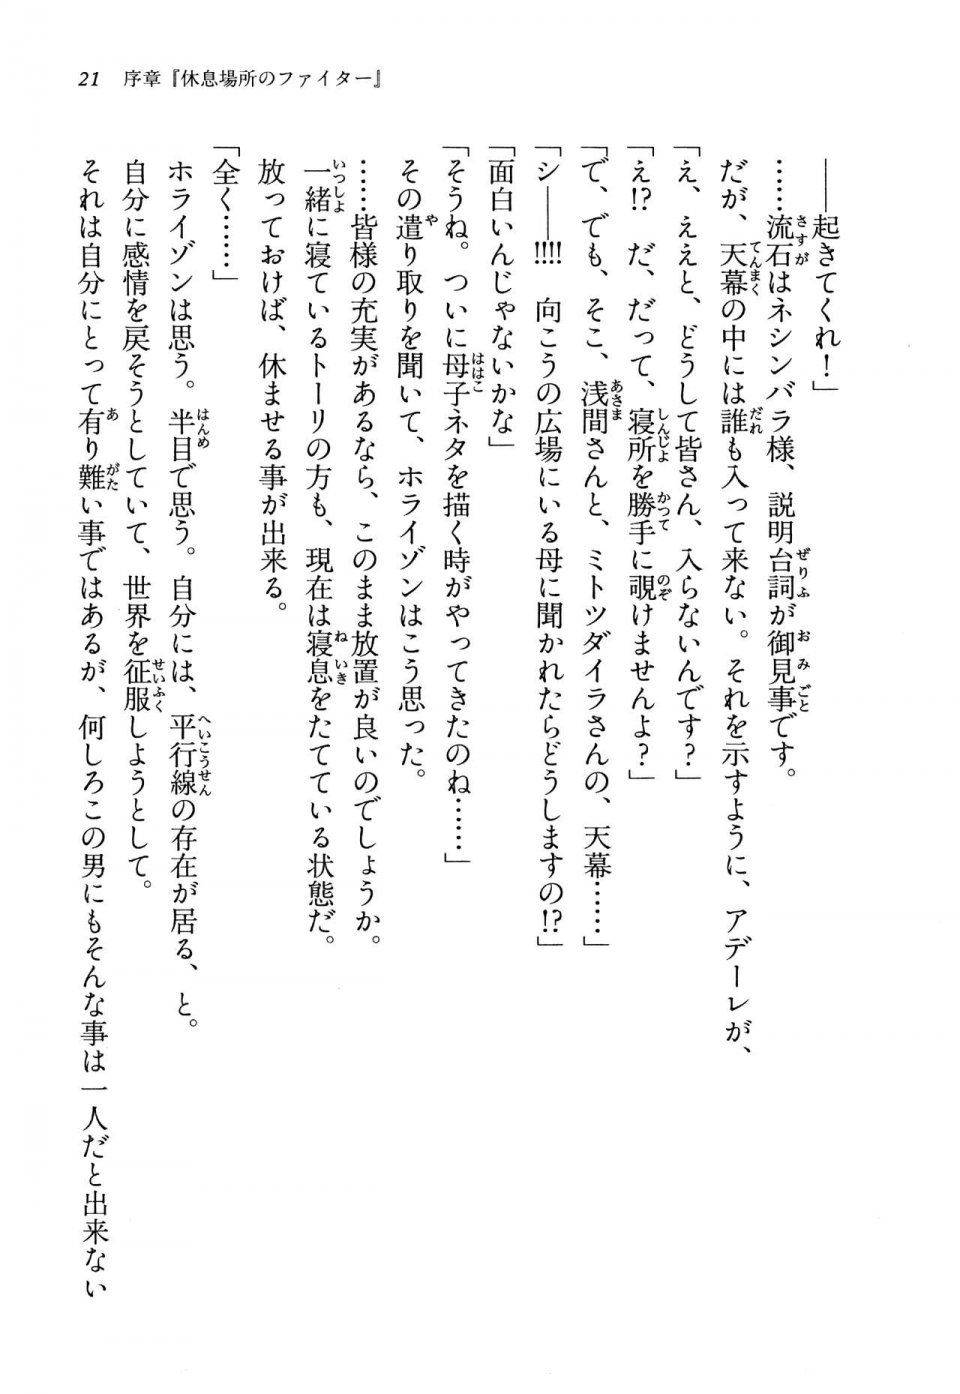 Kyoukai Senjou no Horizon LN Vol 13(6A) - Photo #21